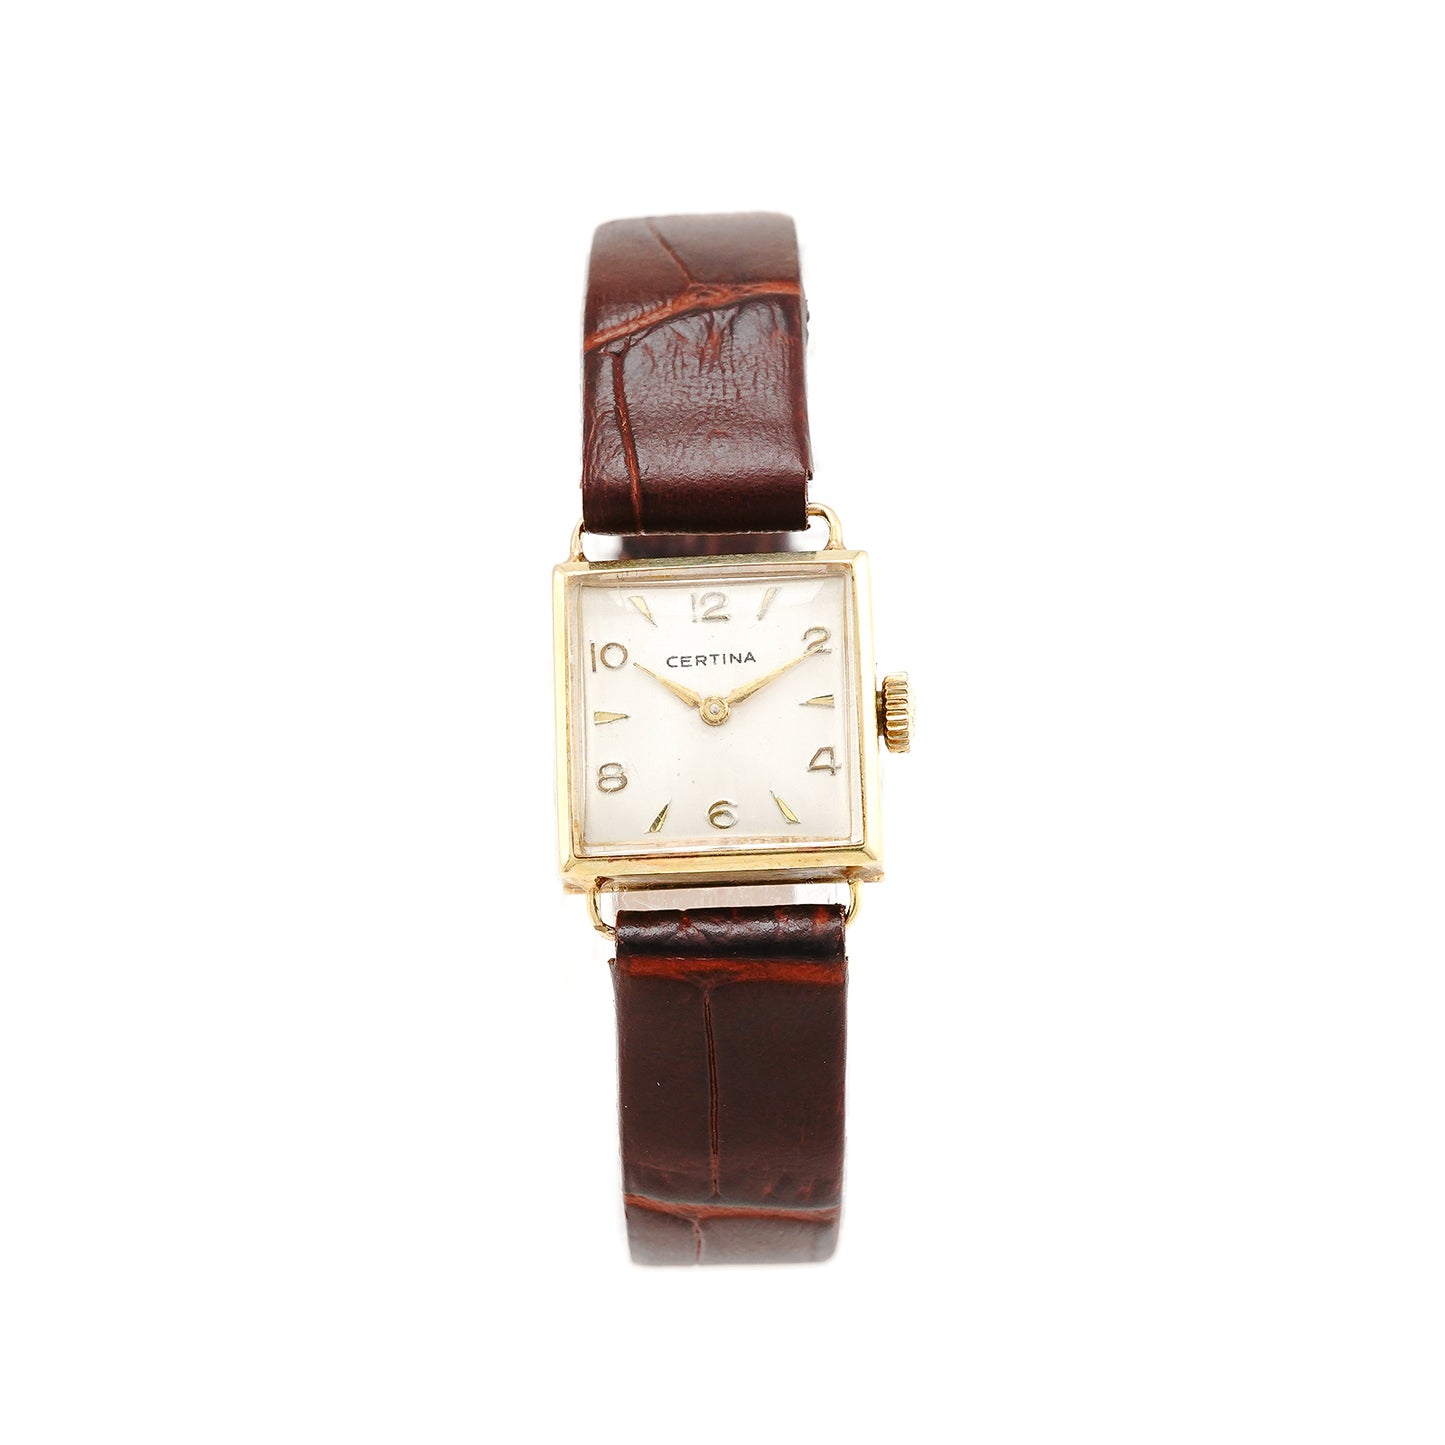 Armbanduhr CERTINA Damenuhr Gelbgold 14K Lederband Golduhr Handaufzug Vintage watch